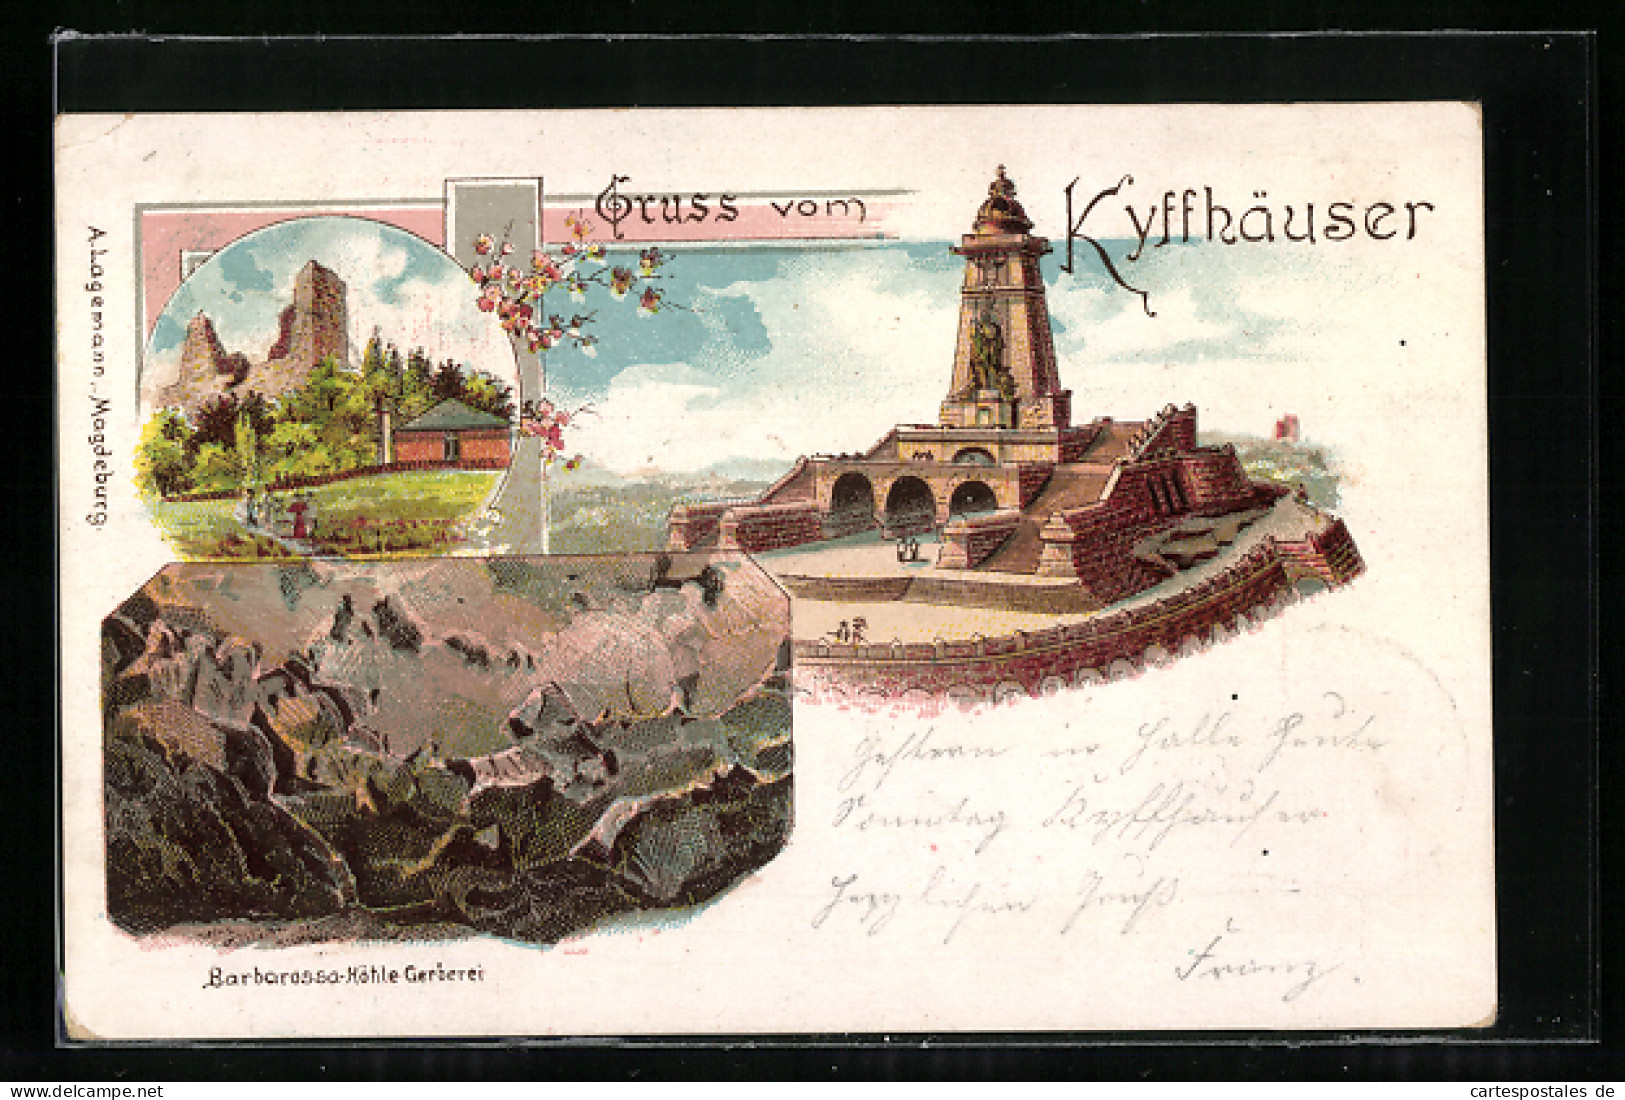 Lithographie Kyffhäuser, Kaiser Wilhelm-Denkmal, Barbarossa Höhle - Gerberei, Ruine  - Kyffhäuser